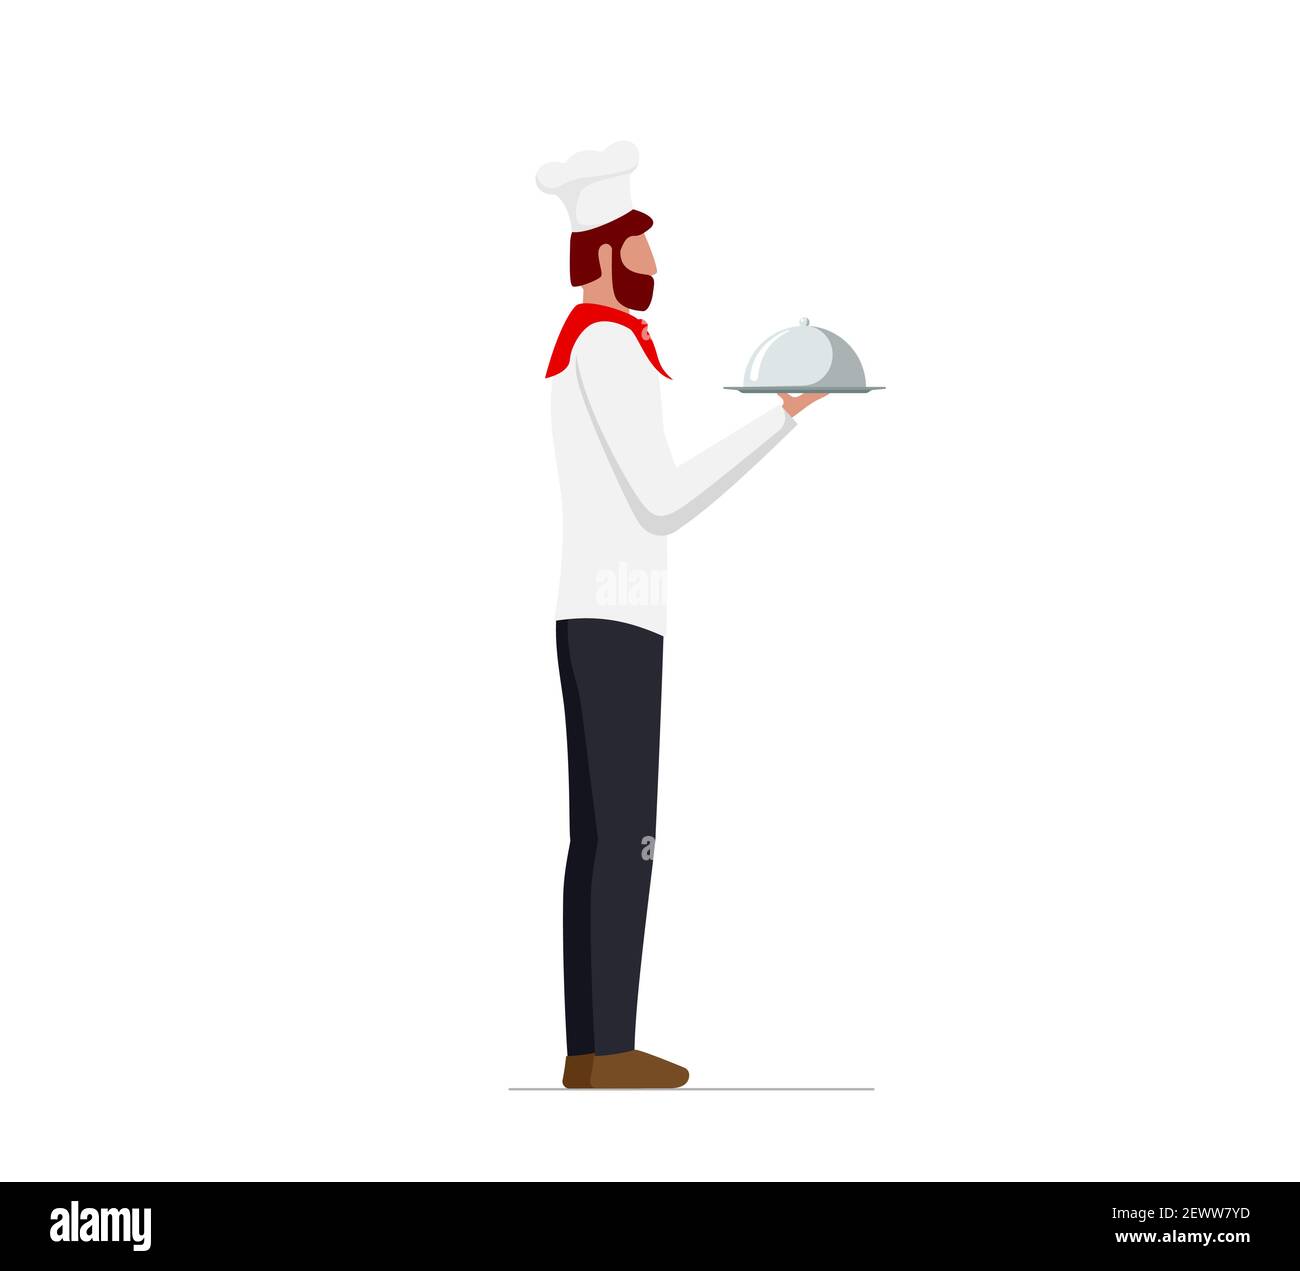 Elegante chef maschile in uniforme e cappello che tiene piatto di servire  con cupola. Ristorante o caffetteria, concetto di servizio di alta qualità.  Immagine piatta vettoriale Immagine e Vettoriale - Alamy